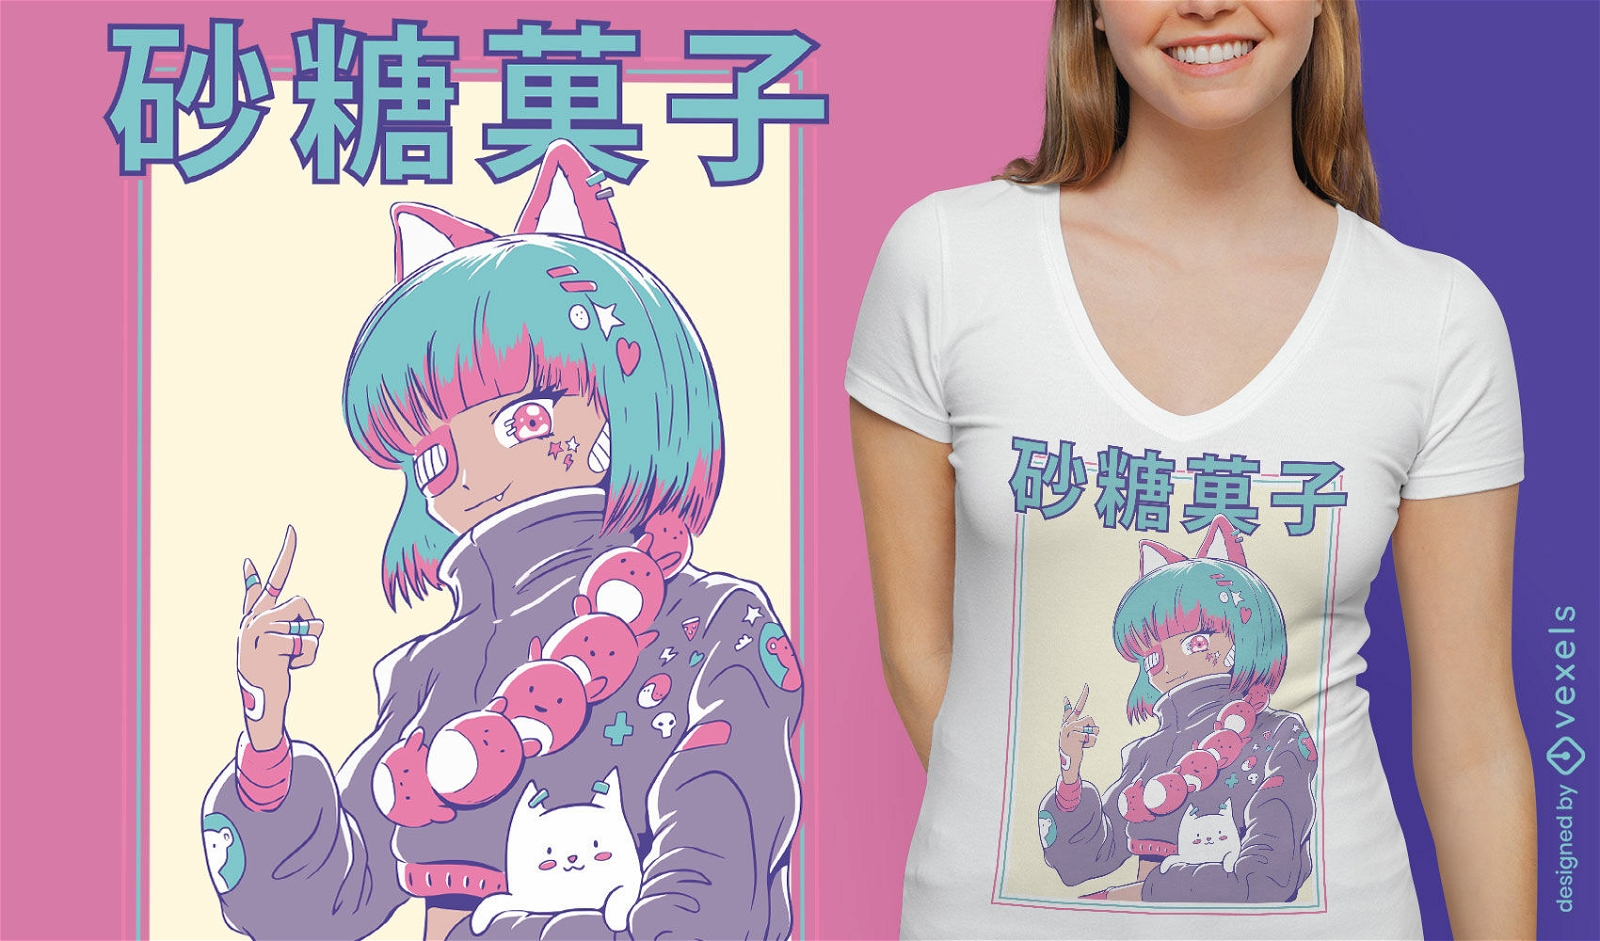 Descarga Vector De Linda Chica Anime Con Diseño De Camiseta Con Parche En  El Ojo